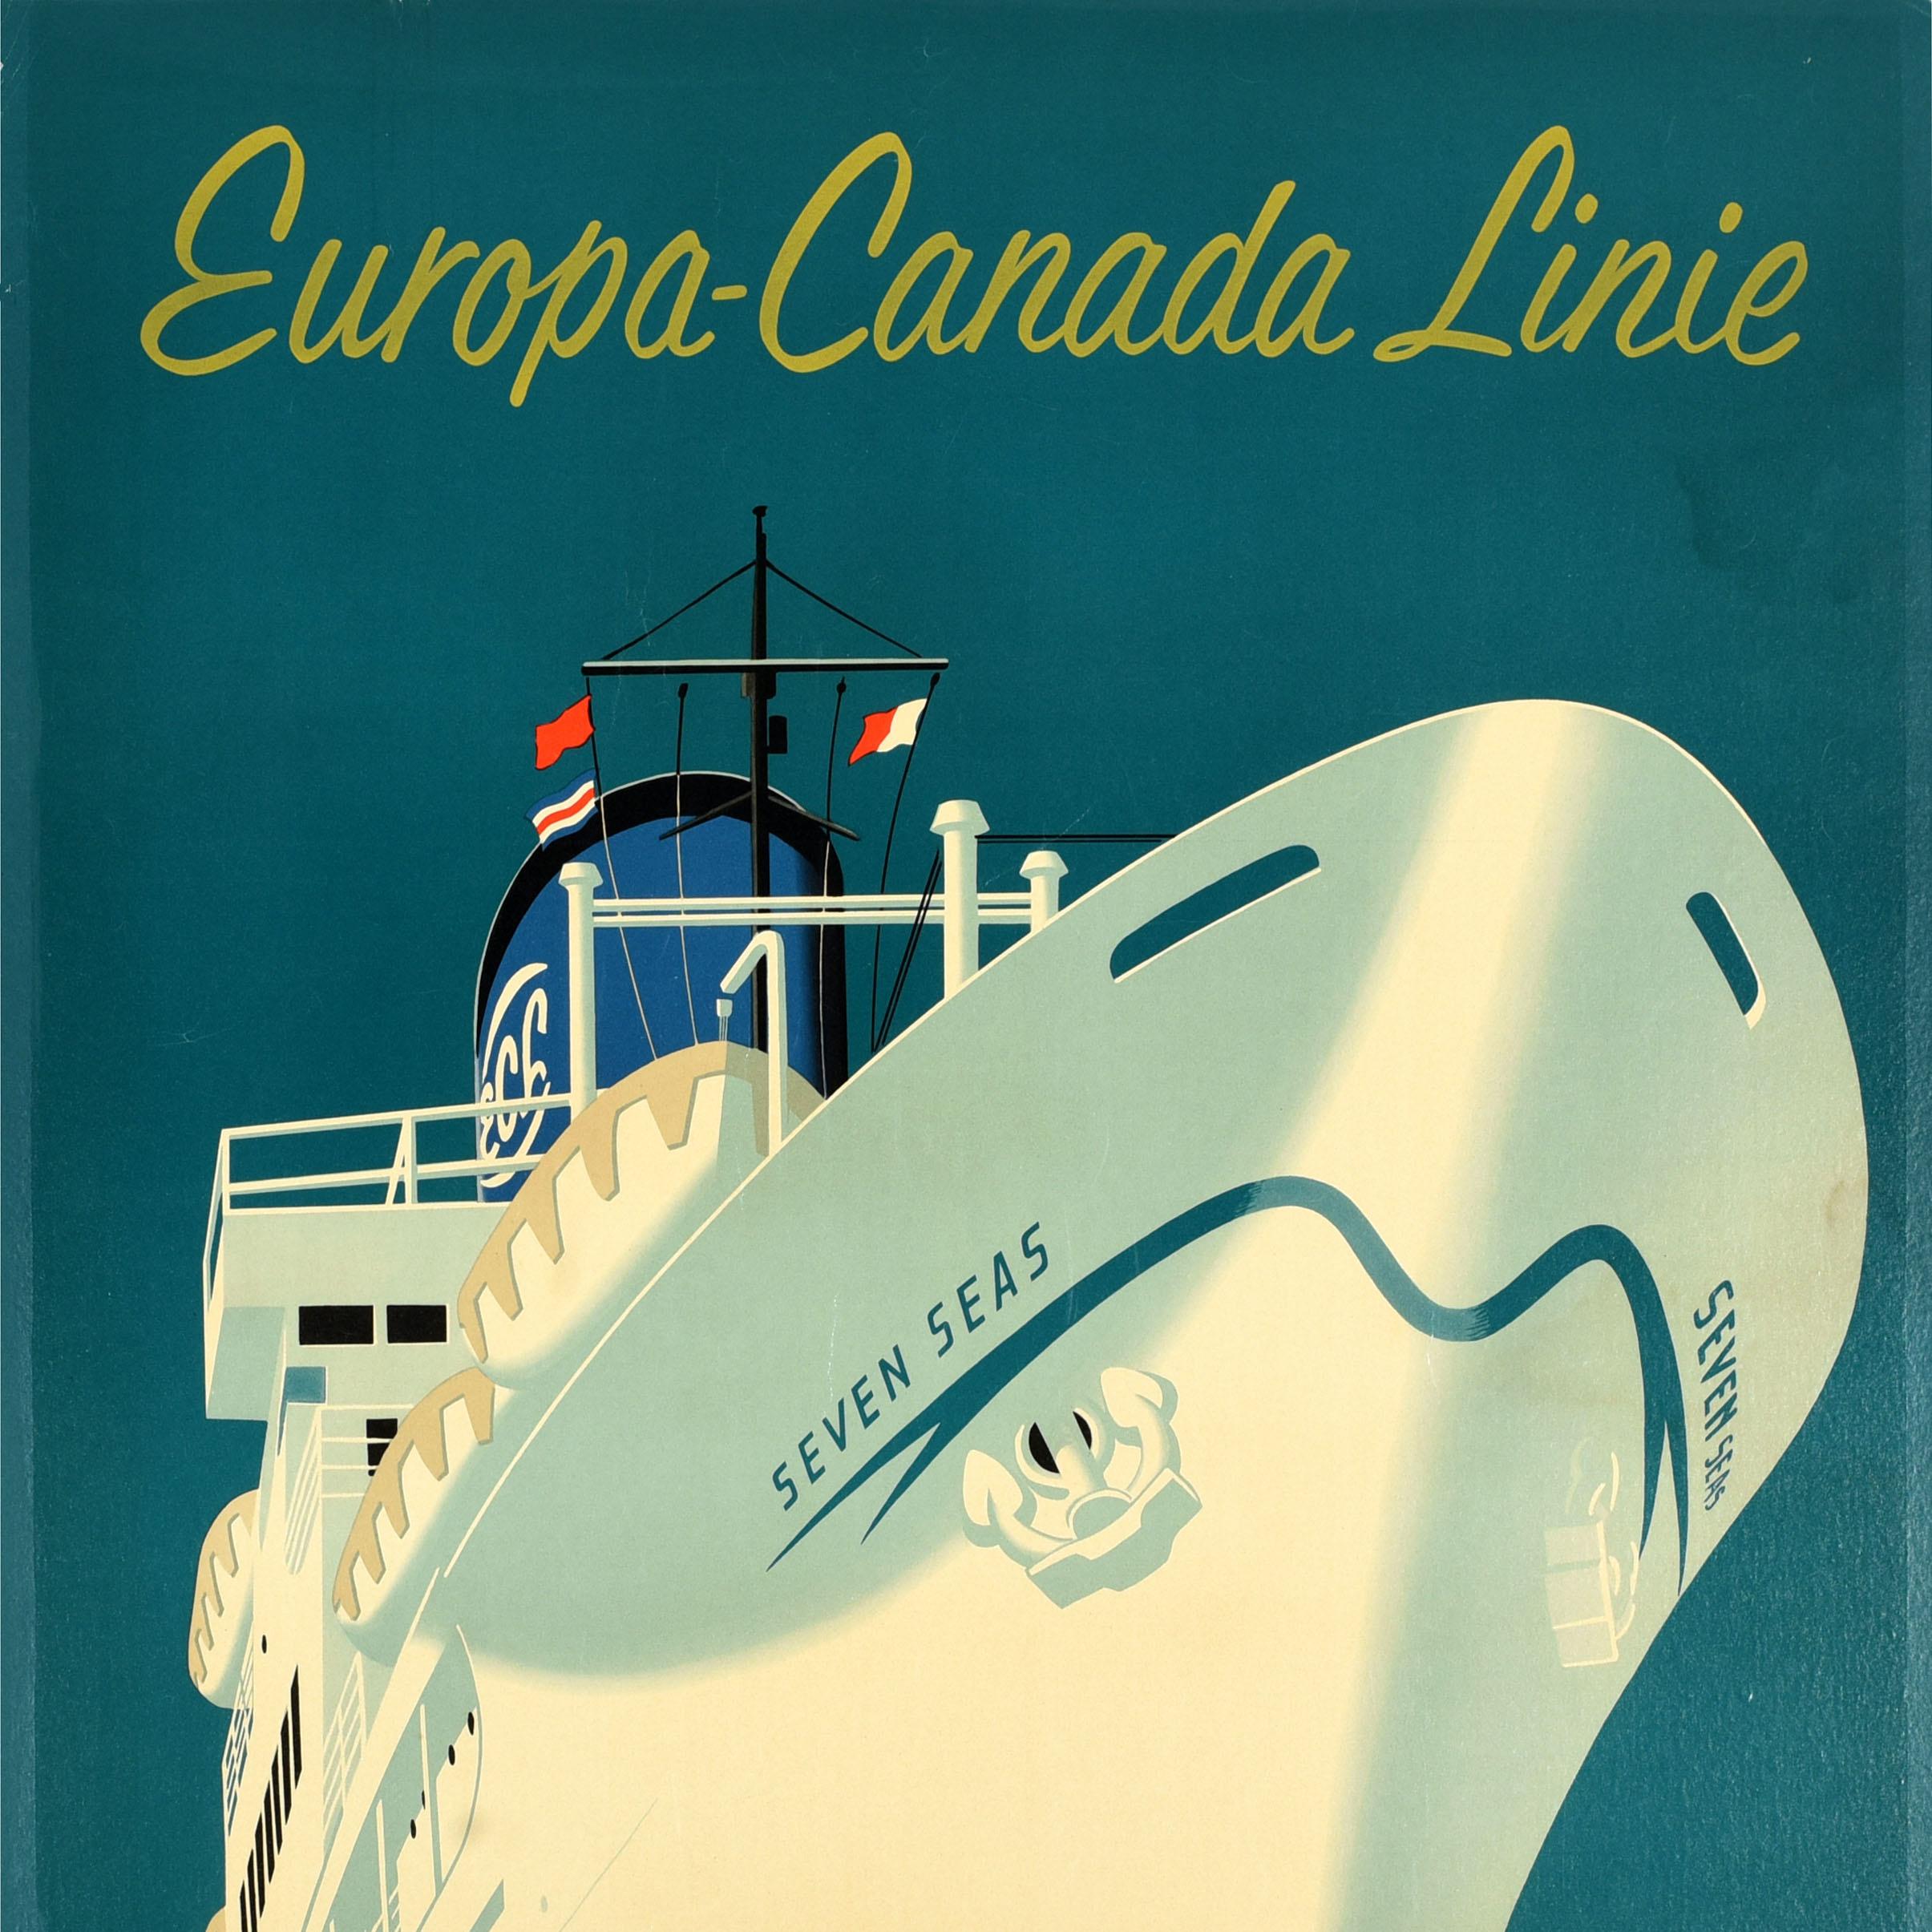 Original-Vintage-Reise-Werbeplakat, Europa, Kanada, Versandlinie Dirksen (Blau), Print, von Reyn Dirksen